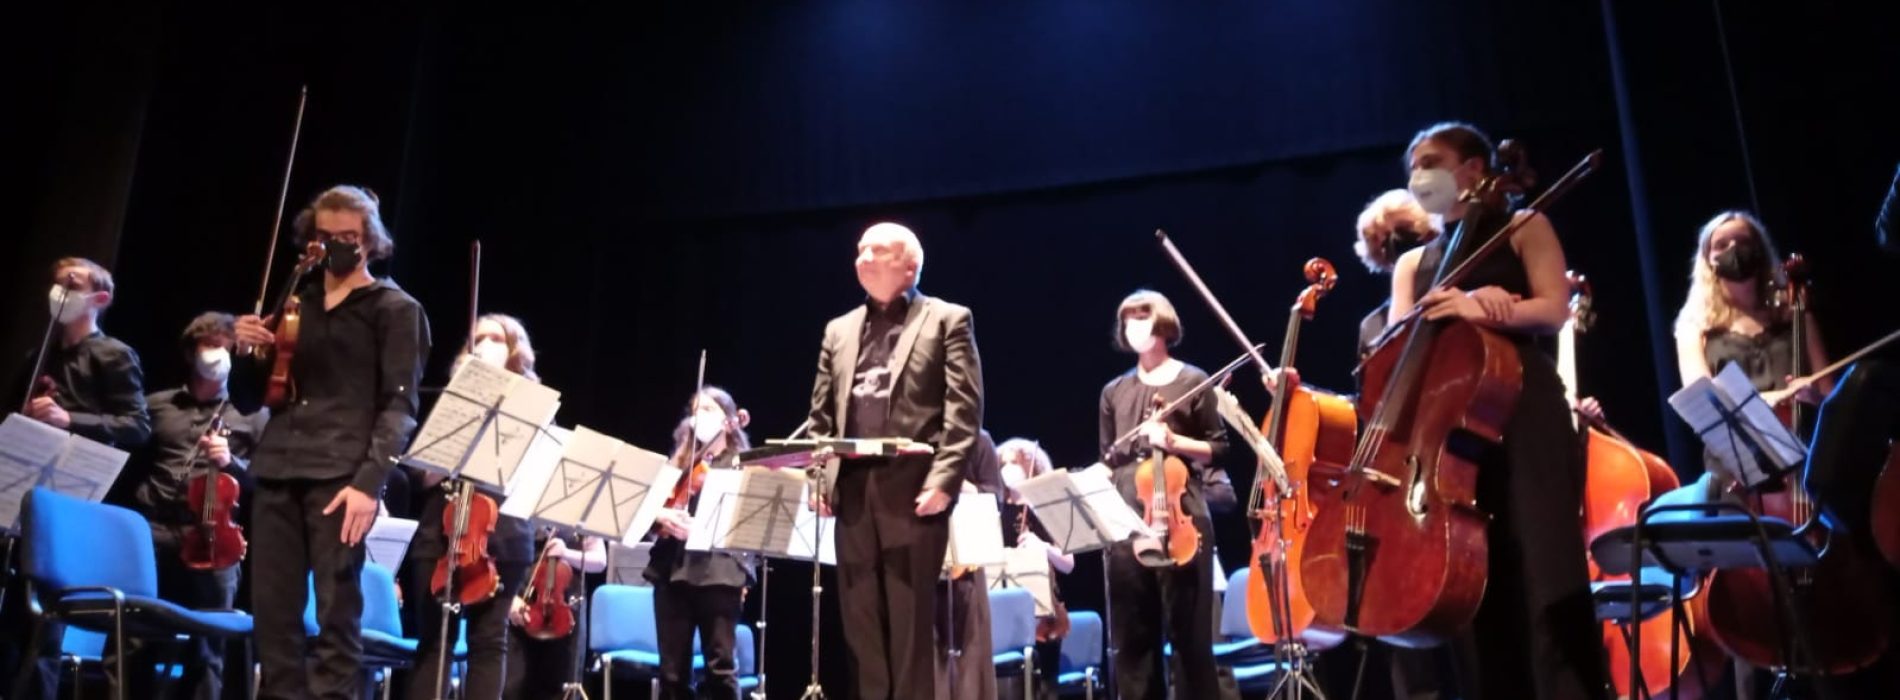 Concerto d’archi al Comunale, sul palco i giovani di Friburgo